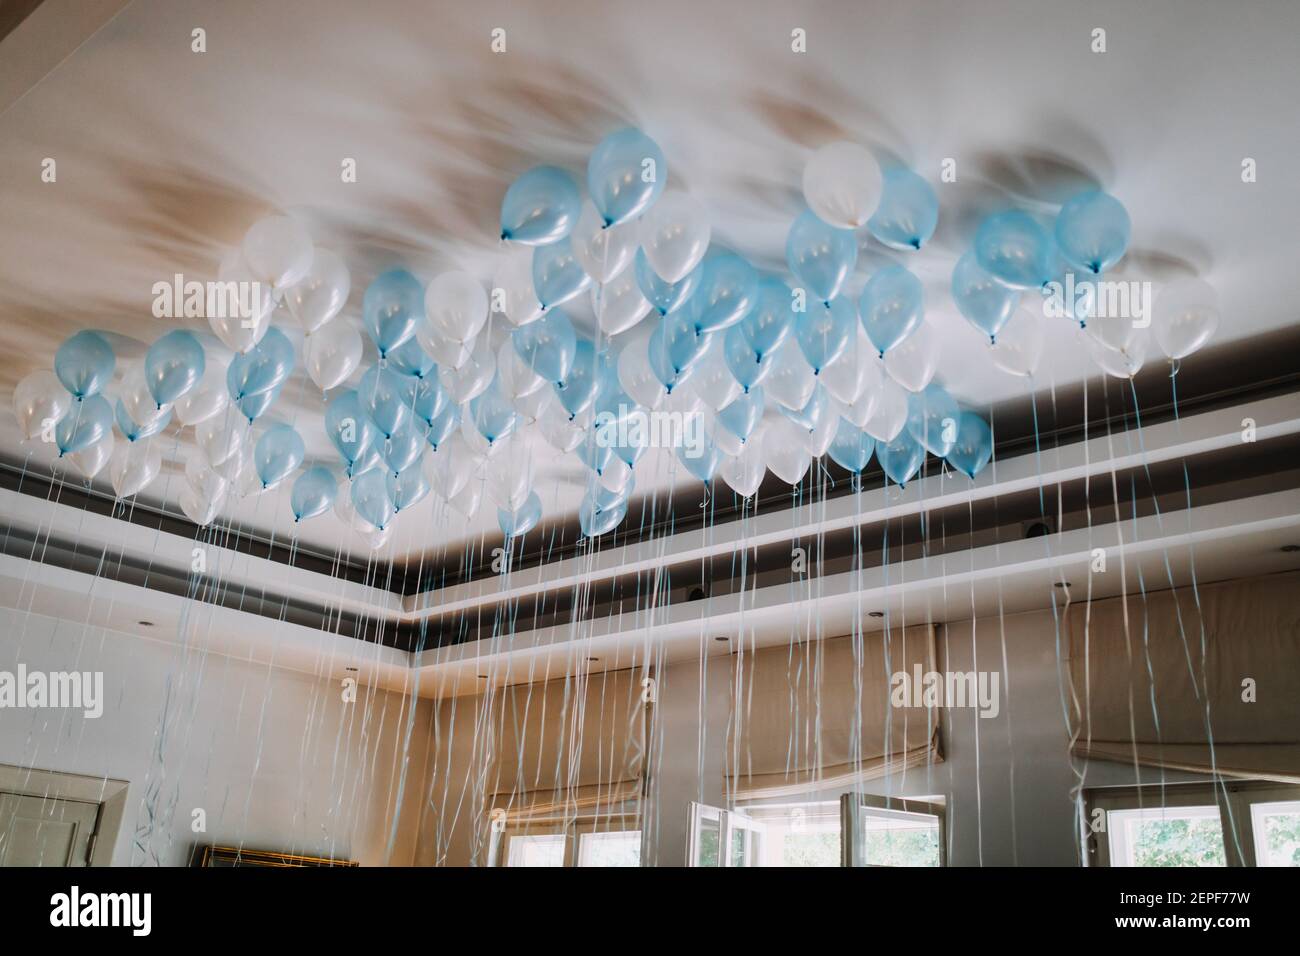 photo de ballons d'hélium au plafond Photo Stock - Alamy